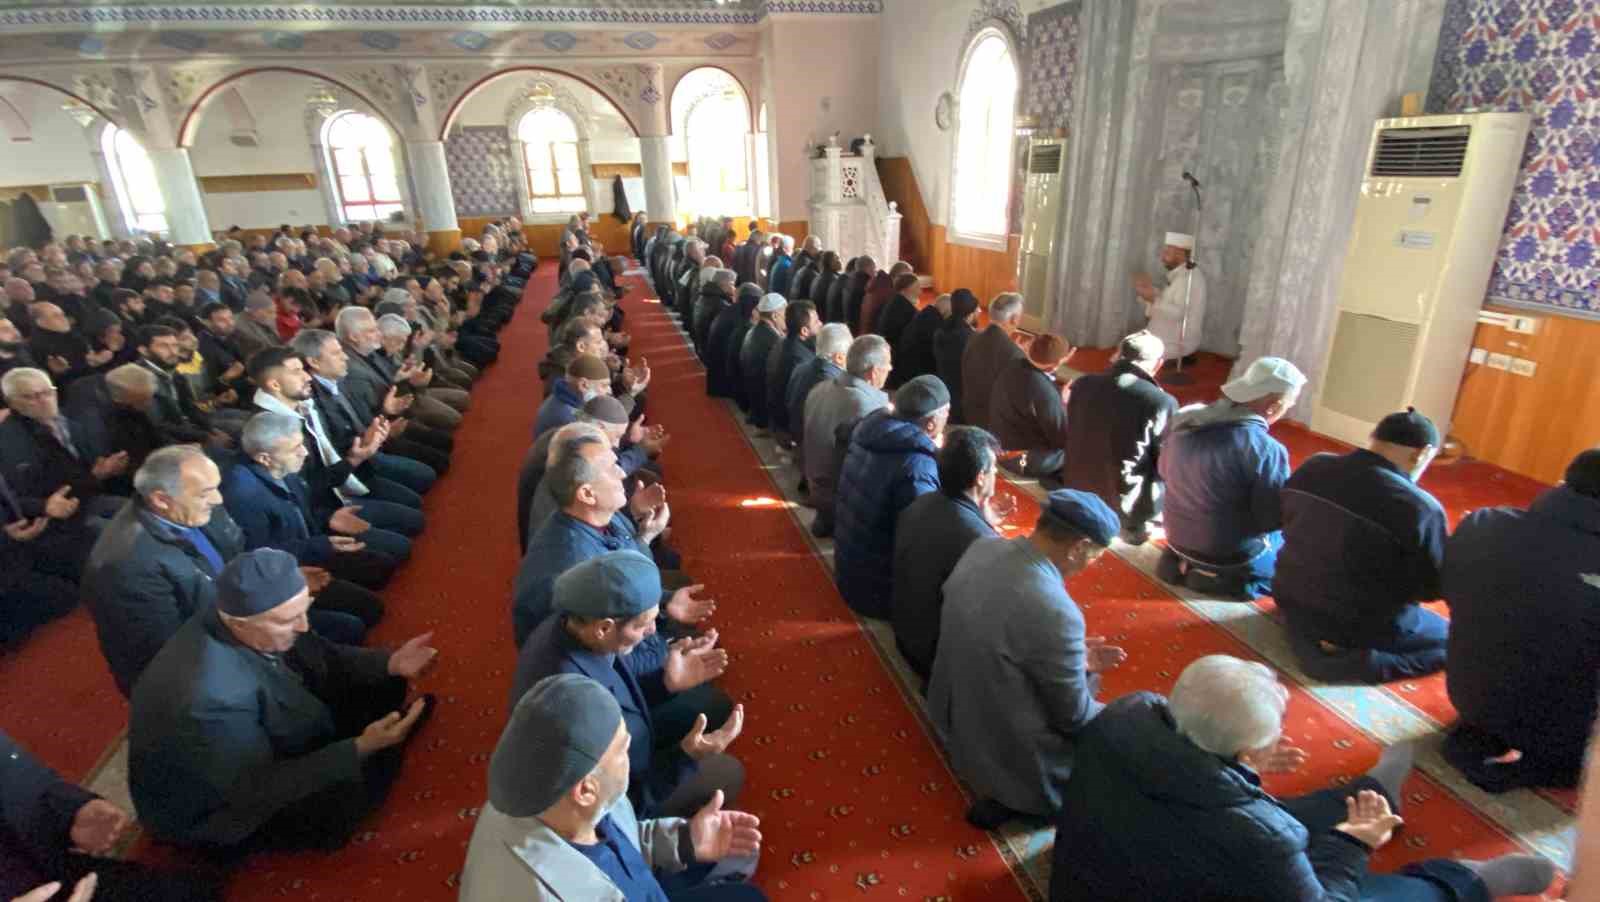 Konya'nın ilçesinde camilerde Filistin için dua edildi